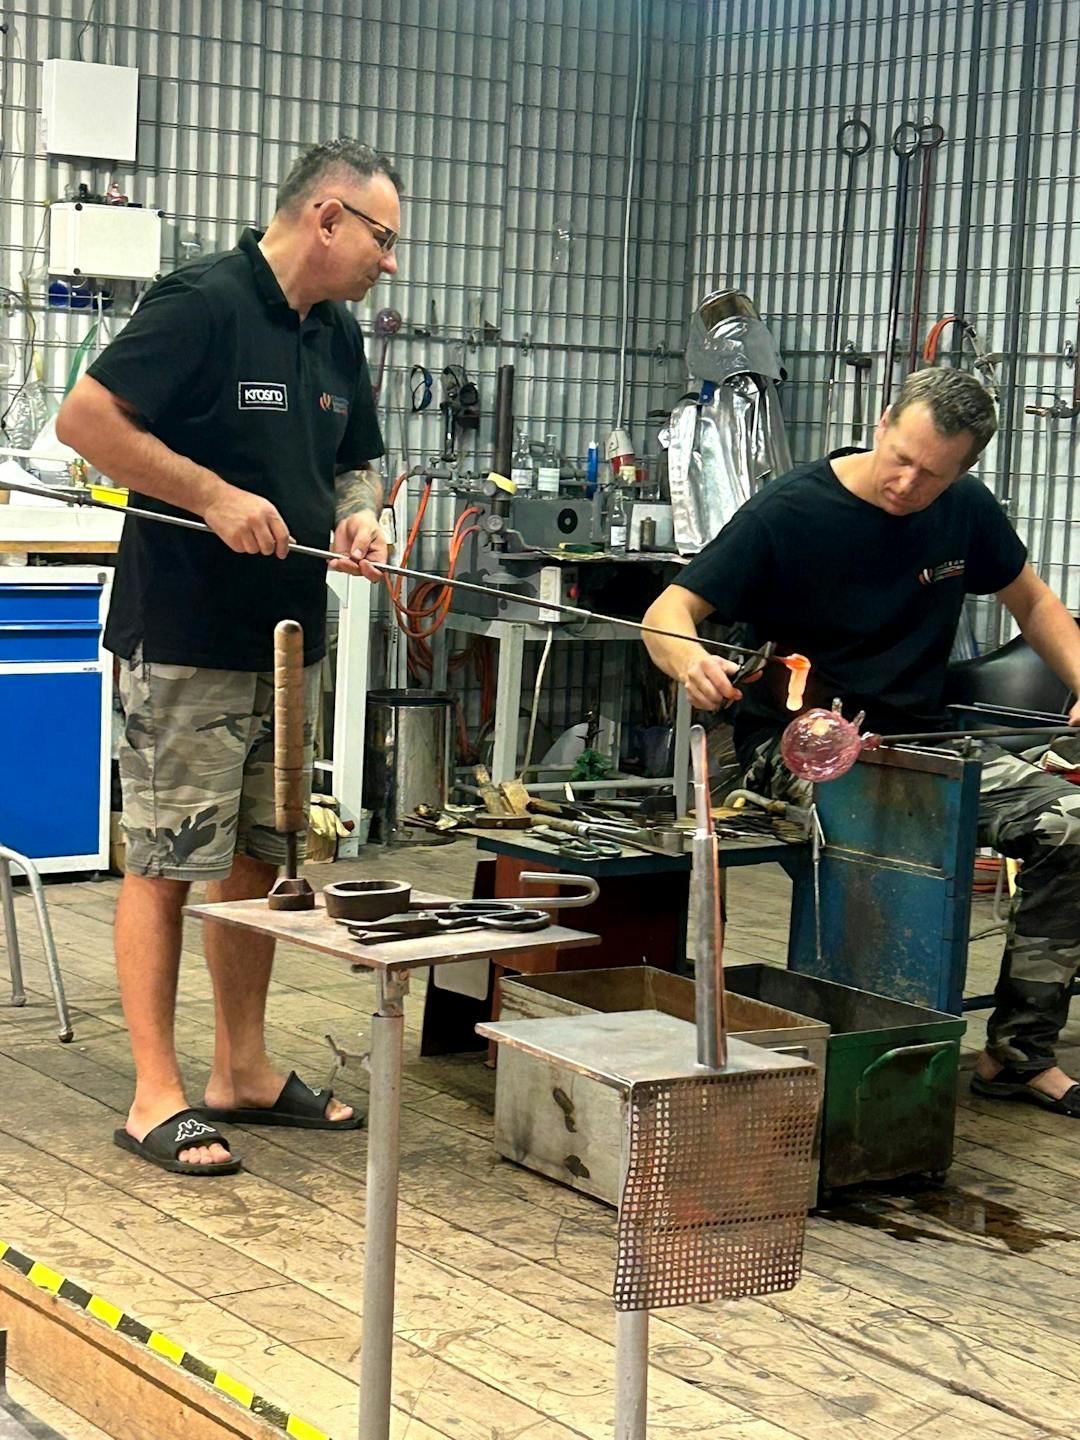 Szklane dziedzictwo Krosna | dwóch mężczyzn prezentuje proces produkcji szkła.jpg